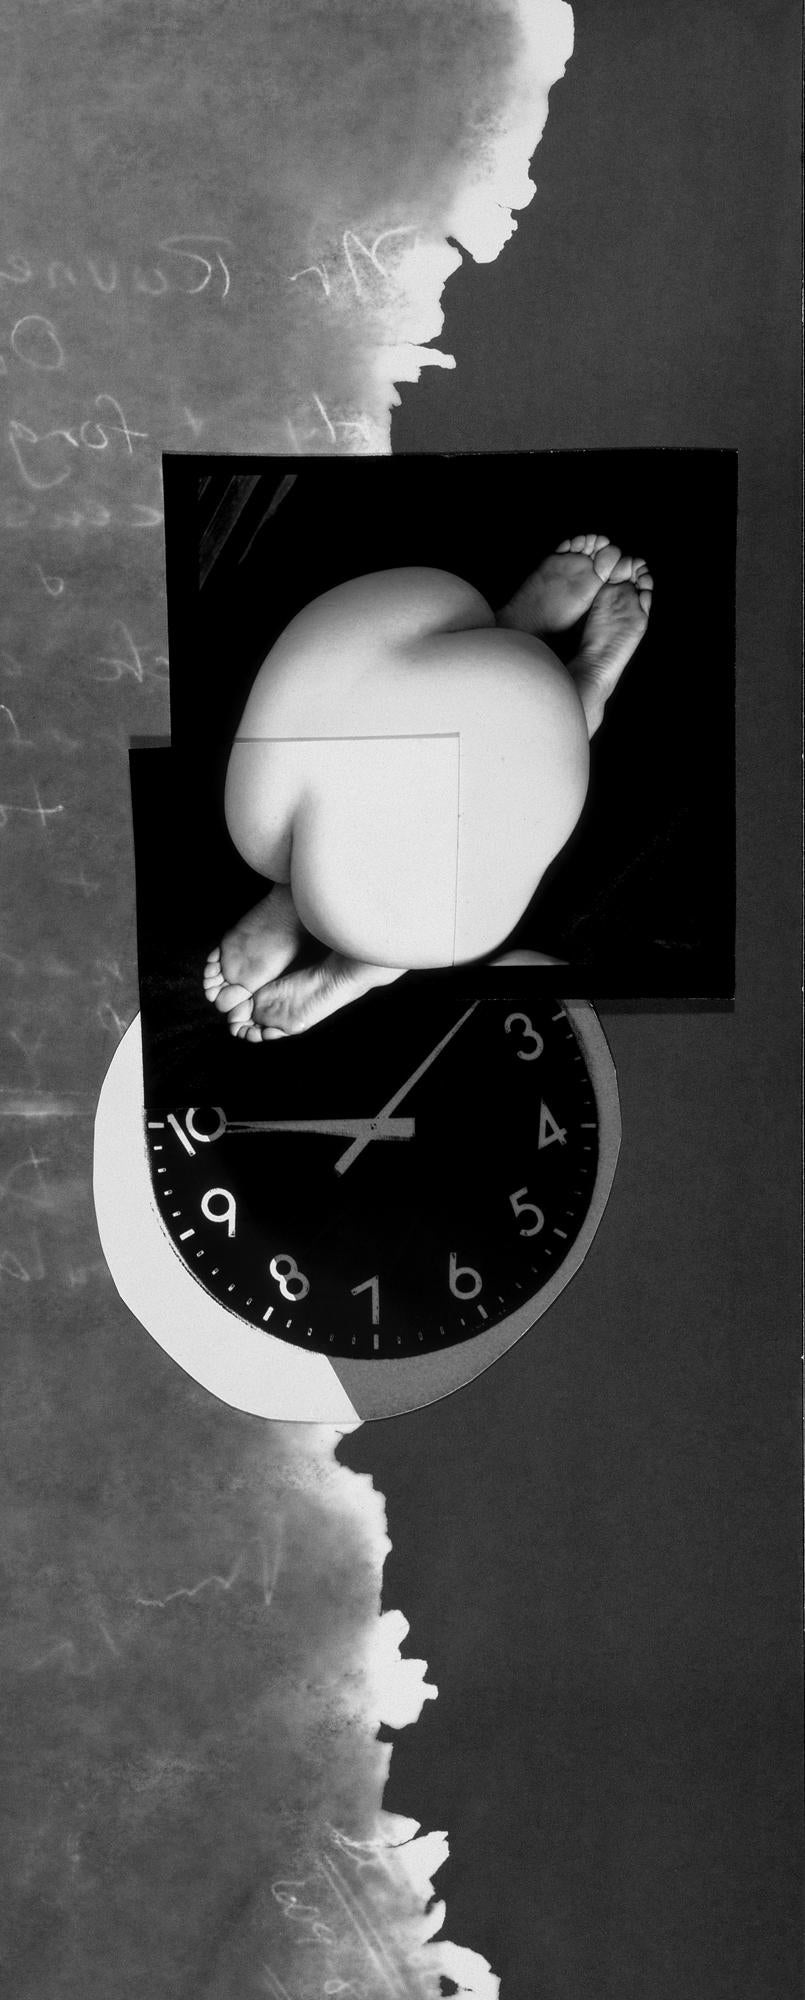 Jenny Lynn Nude Photograph – Doubleend: gerahmte abstrakte Schwarz-Weiß-Fotocollage mit Akt, Uhr, Wolken